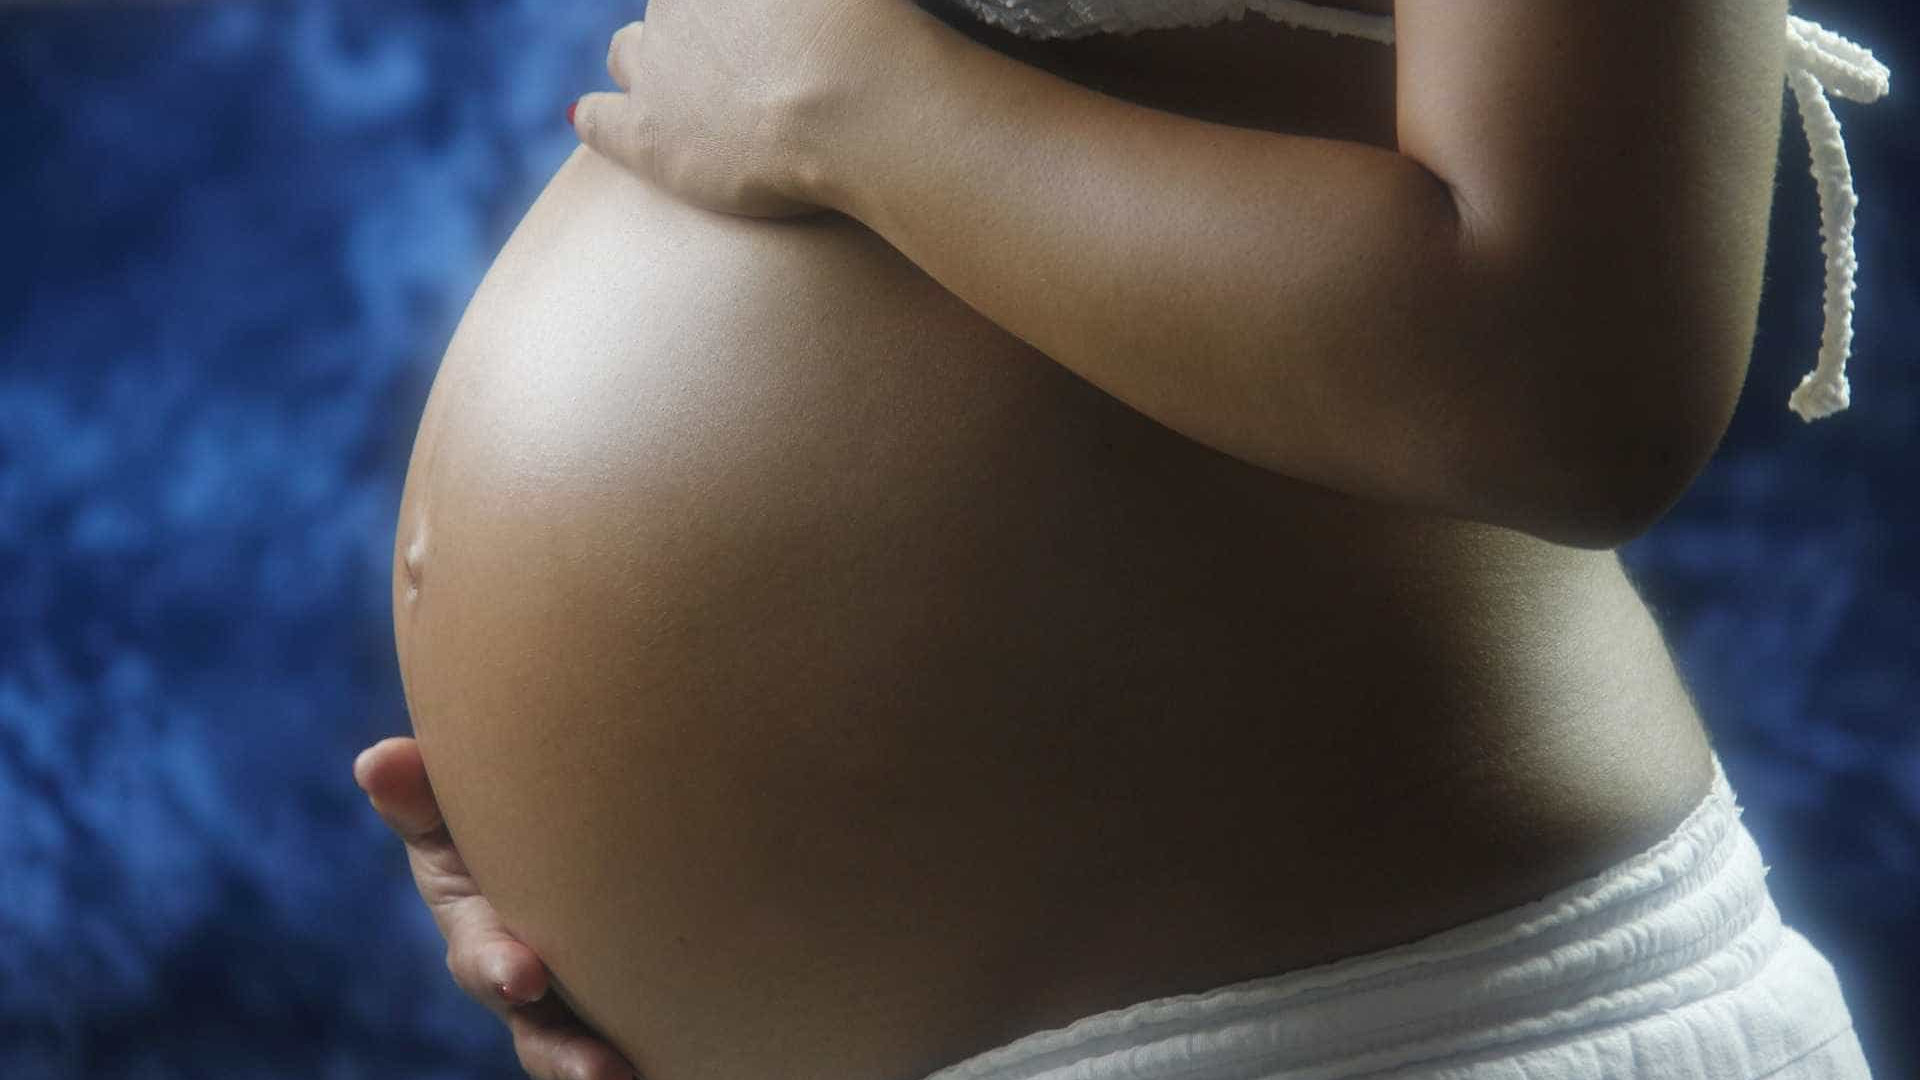 Campanha lança alerta sobre Síndrome 
Alcoólica Fetal